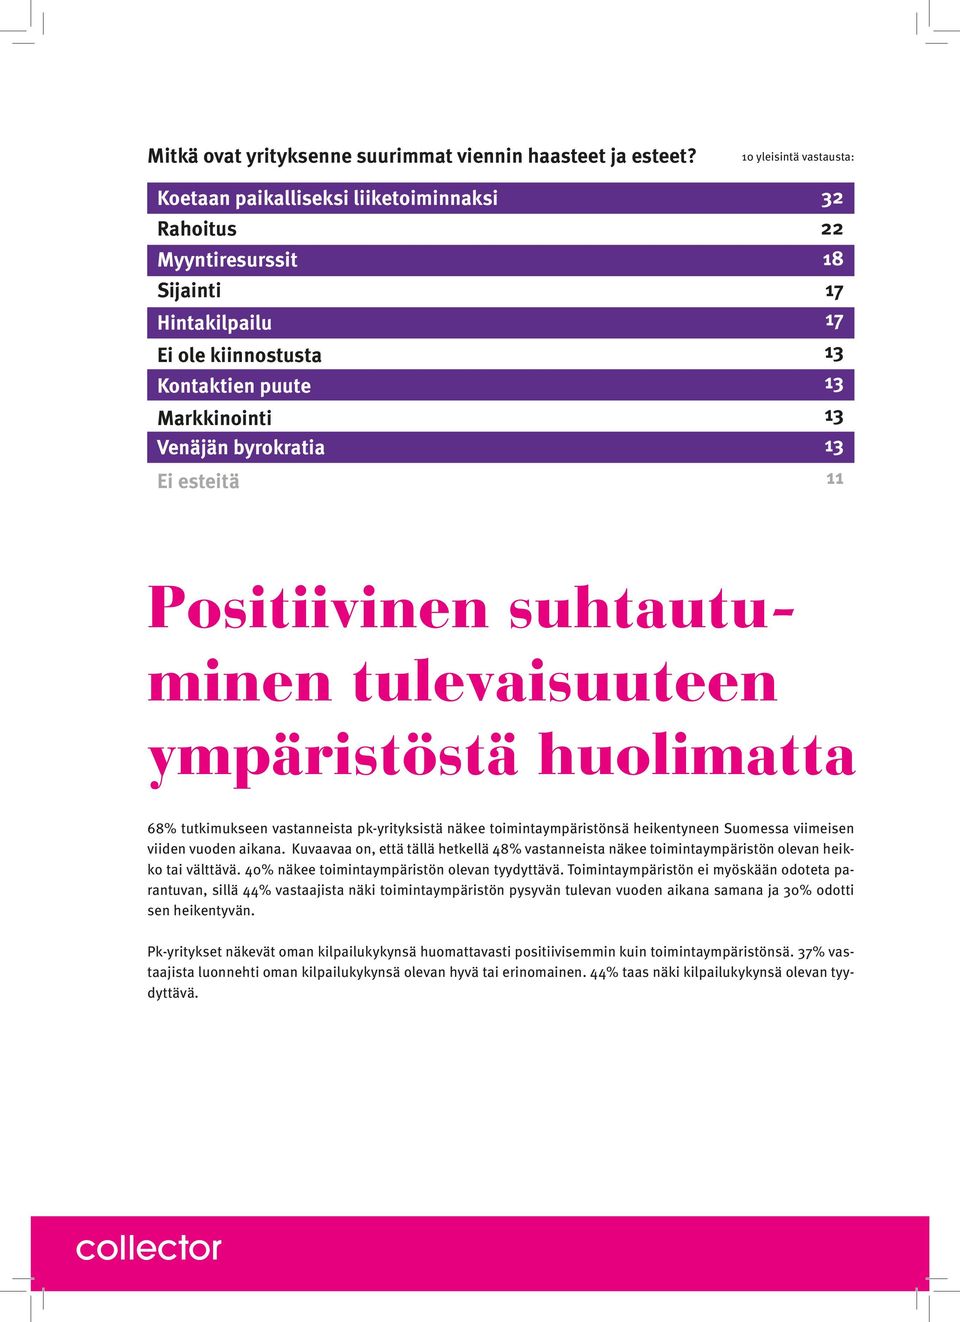 17 17 11 Positiivinen suhtautuminen tulevaisuuteen ympäristöstä huolimatta 68 tutkimukseen vastanneista pkyrityksistä näkee toimintaympäristönsä heikentyneen Suomessa viimeisen viiden vuoden aikana.